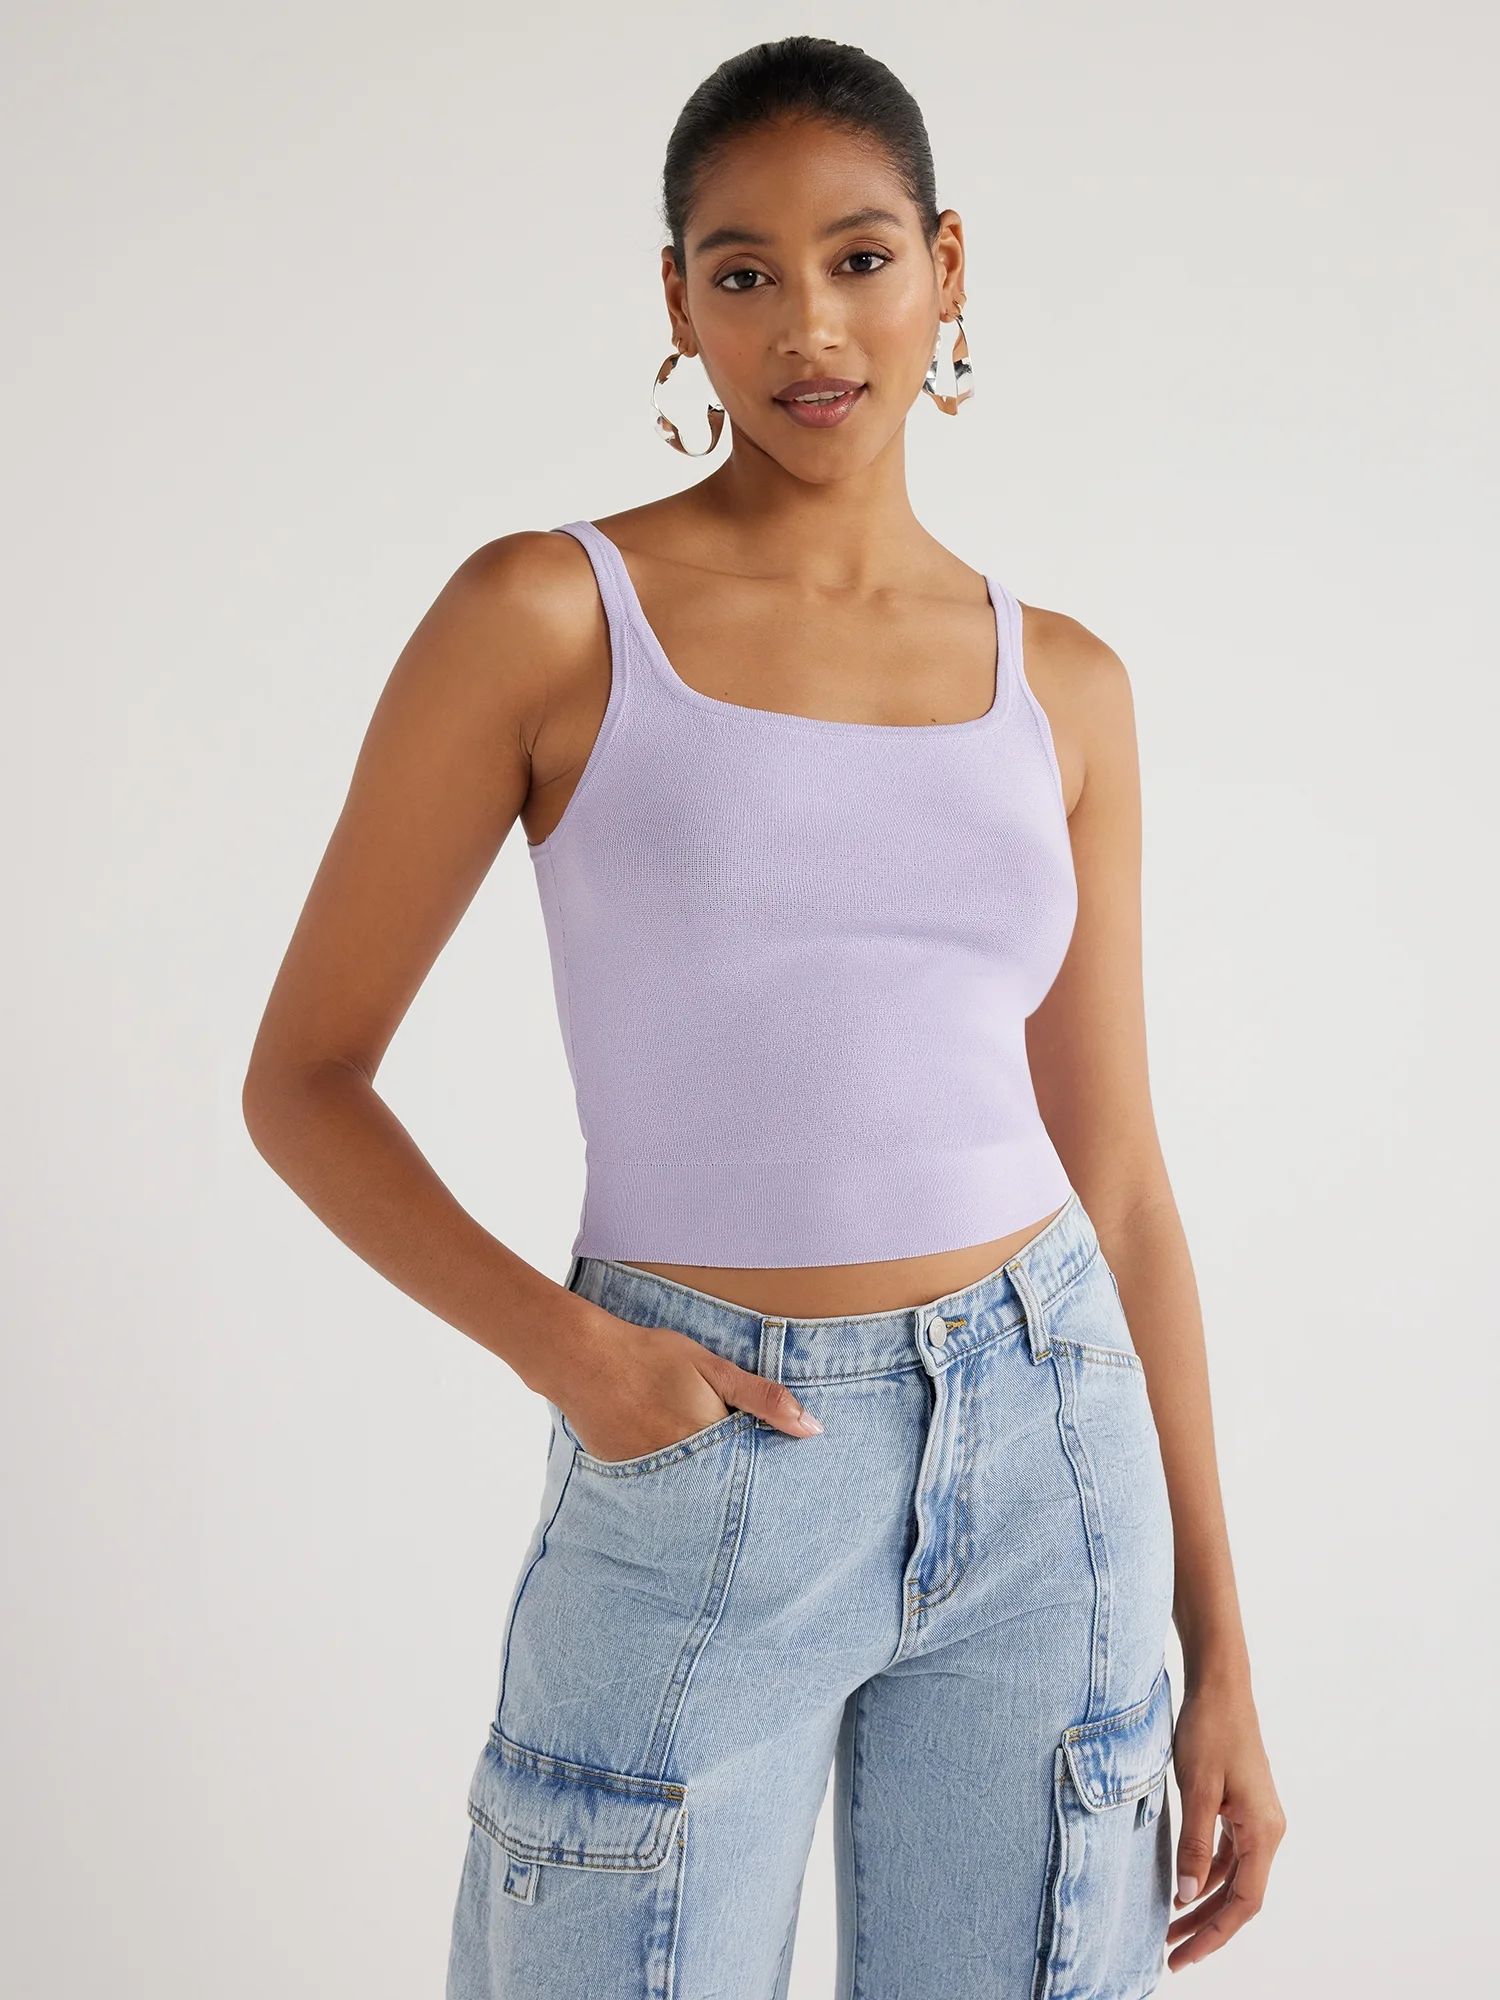 Scoop Women's Cropped Sweater Knit Tank Top, Sizes XS-XXL | Walmart (US)